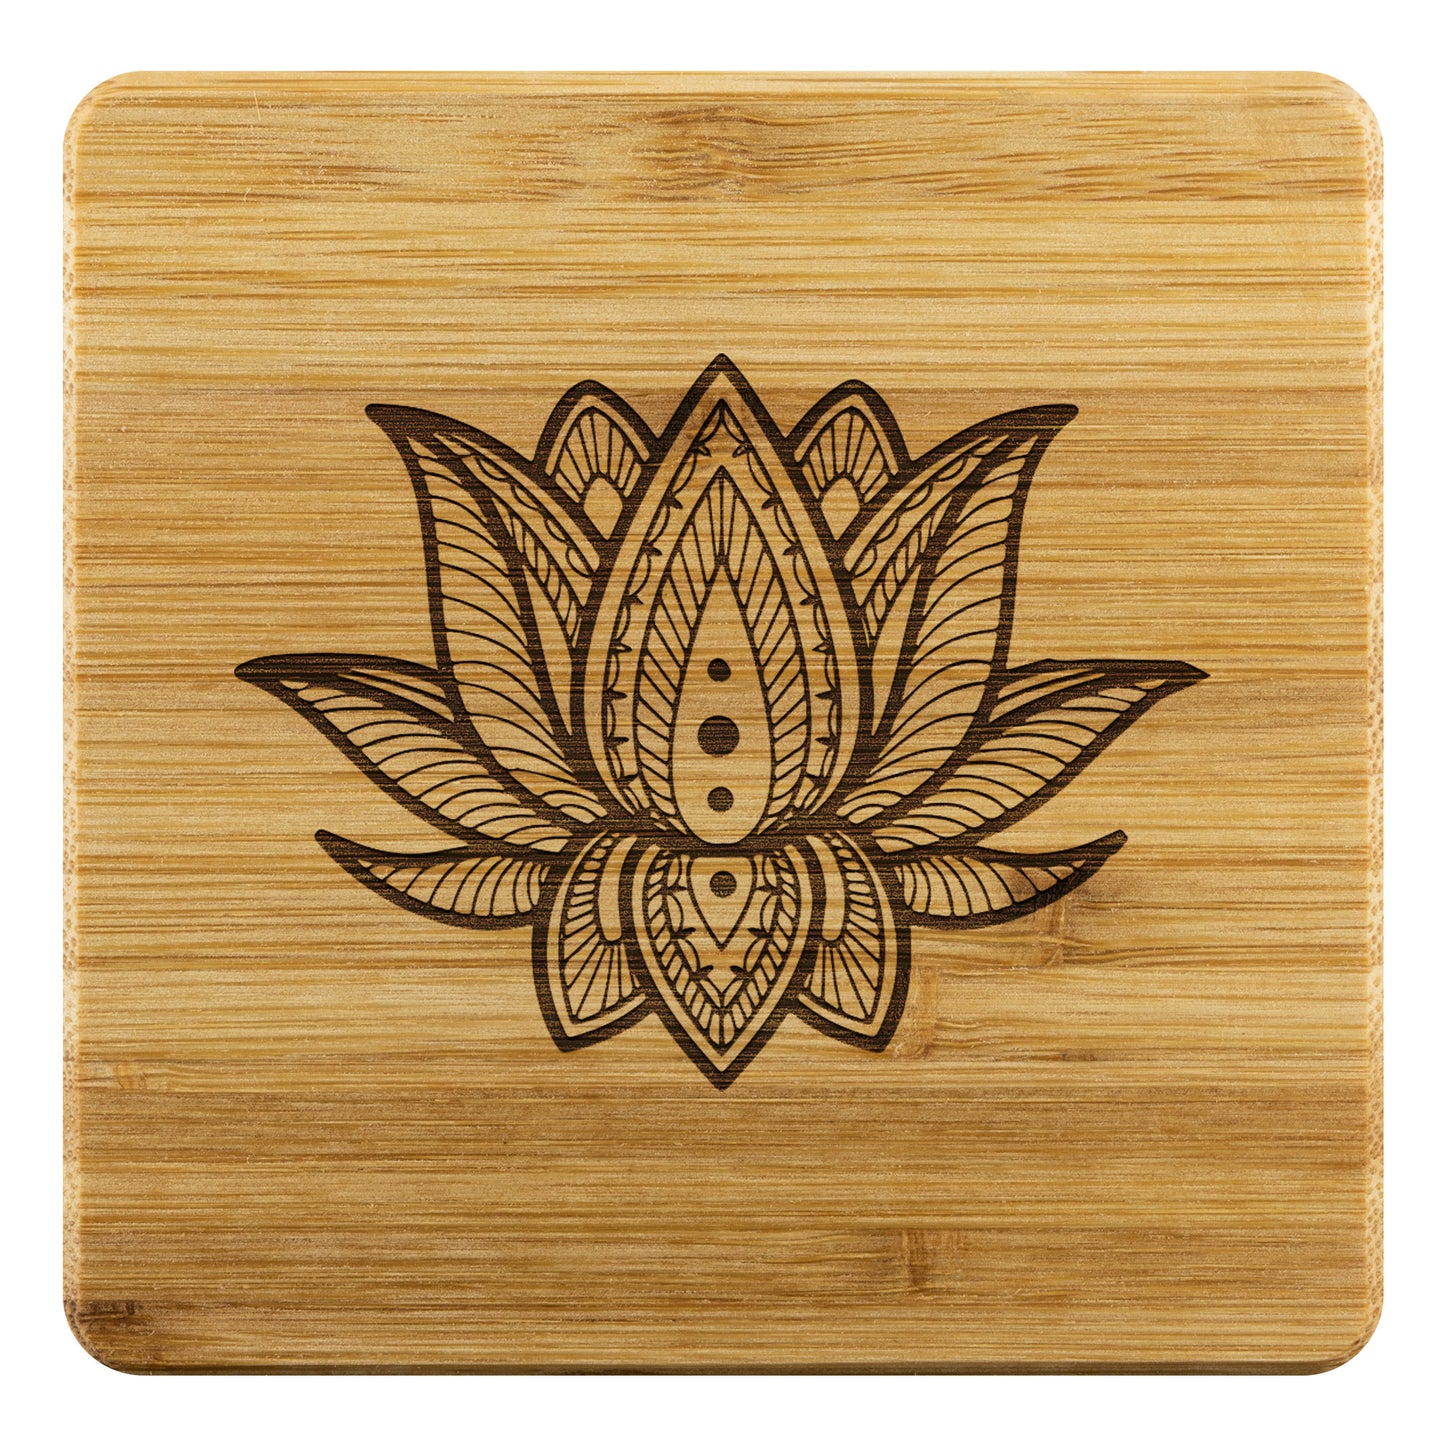 Calming Lotus Flower Coaster Set